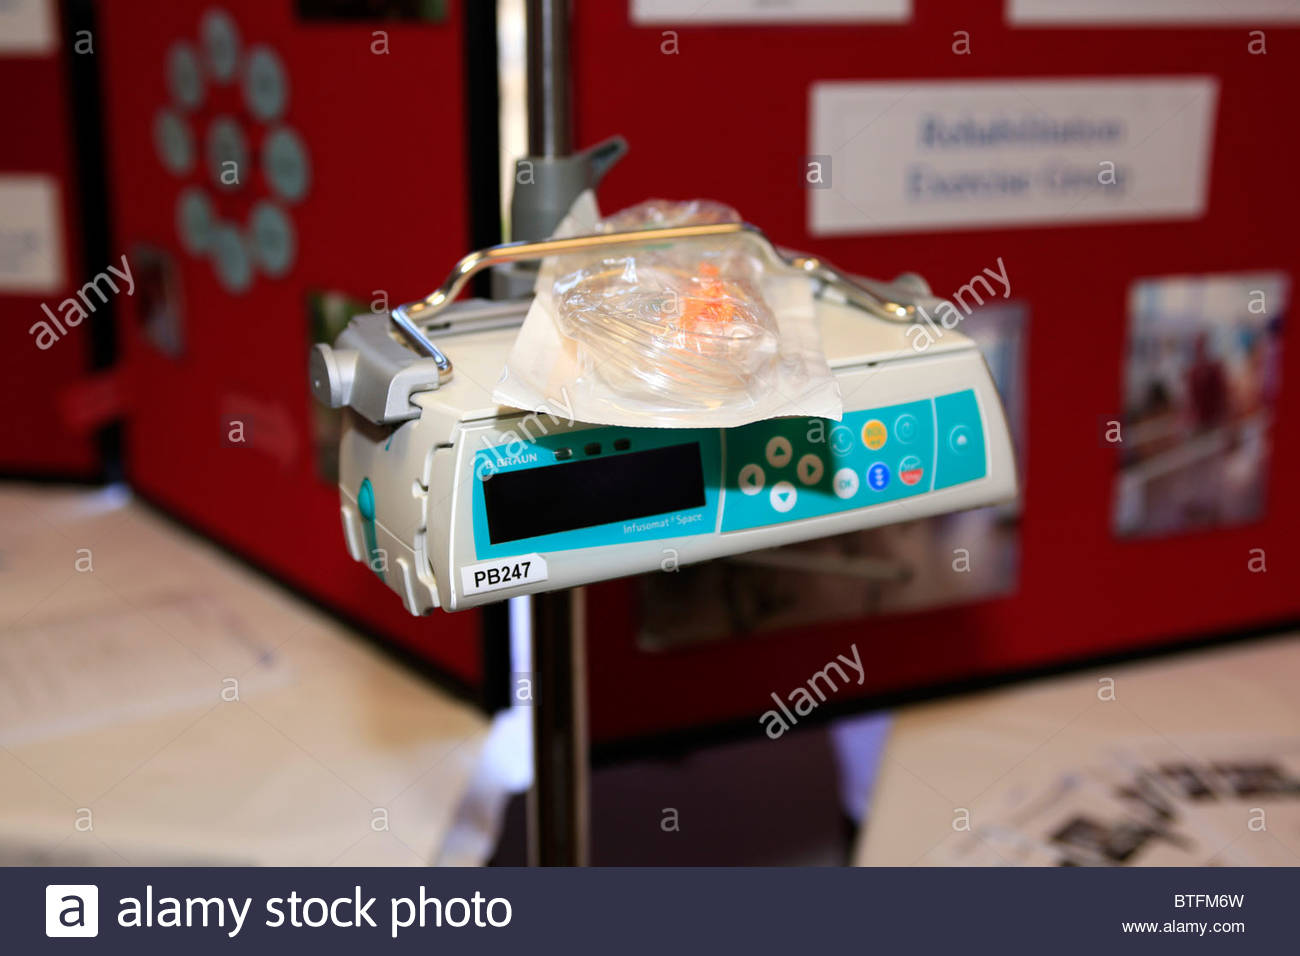 digital-iv-drip-unit-now-used-in-nhs-hospitals-BTFM6W.jpg